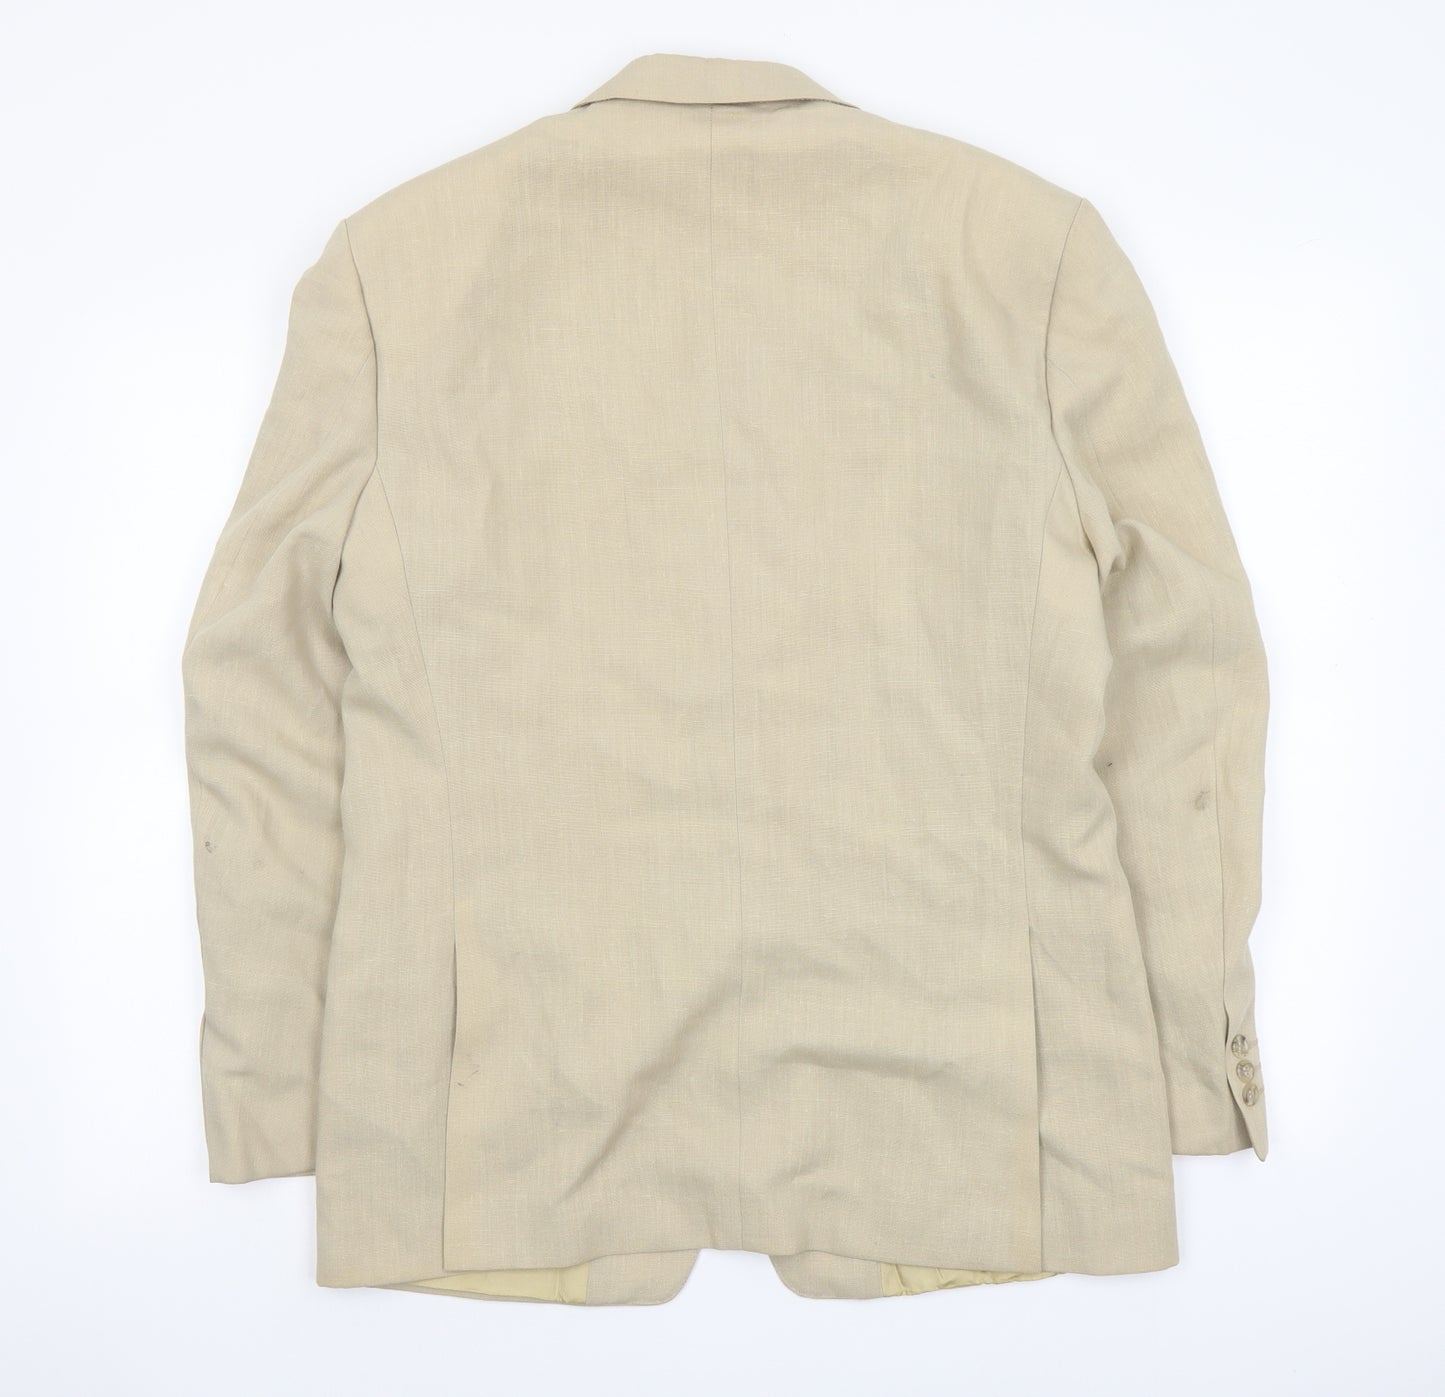 Austin Reed Mens Beige Polyester Jacket Suit Jacket Size 40 Regular